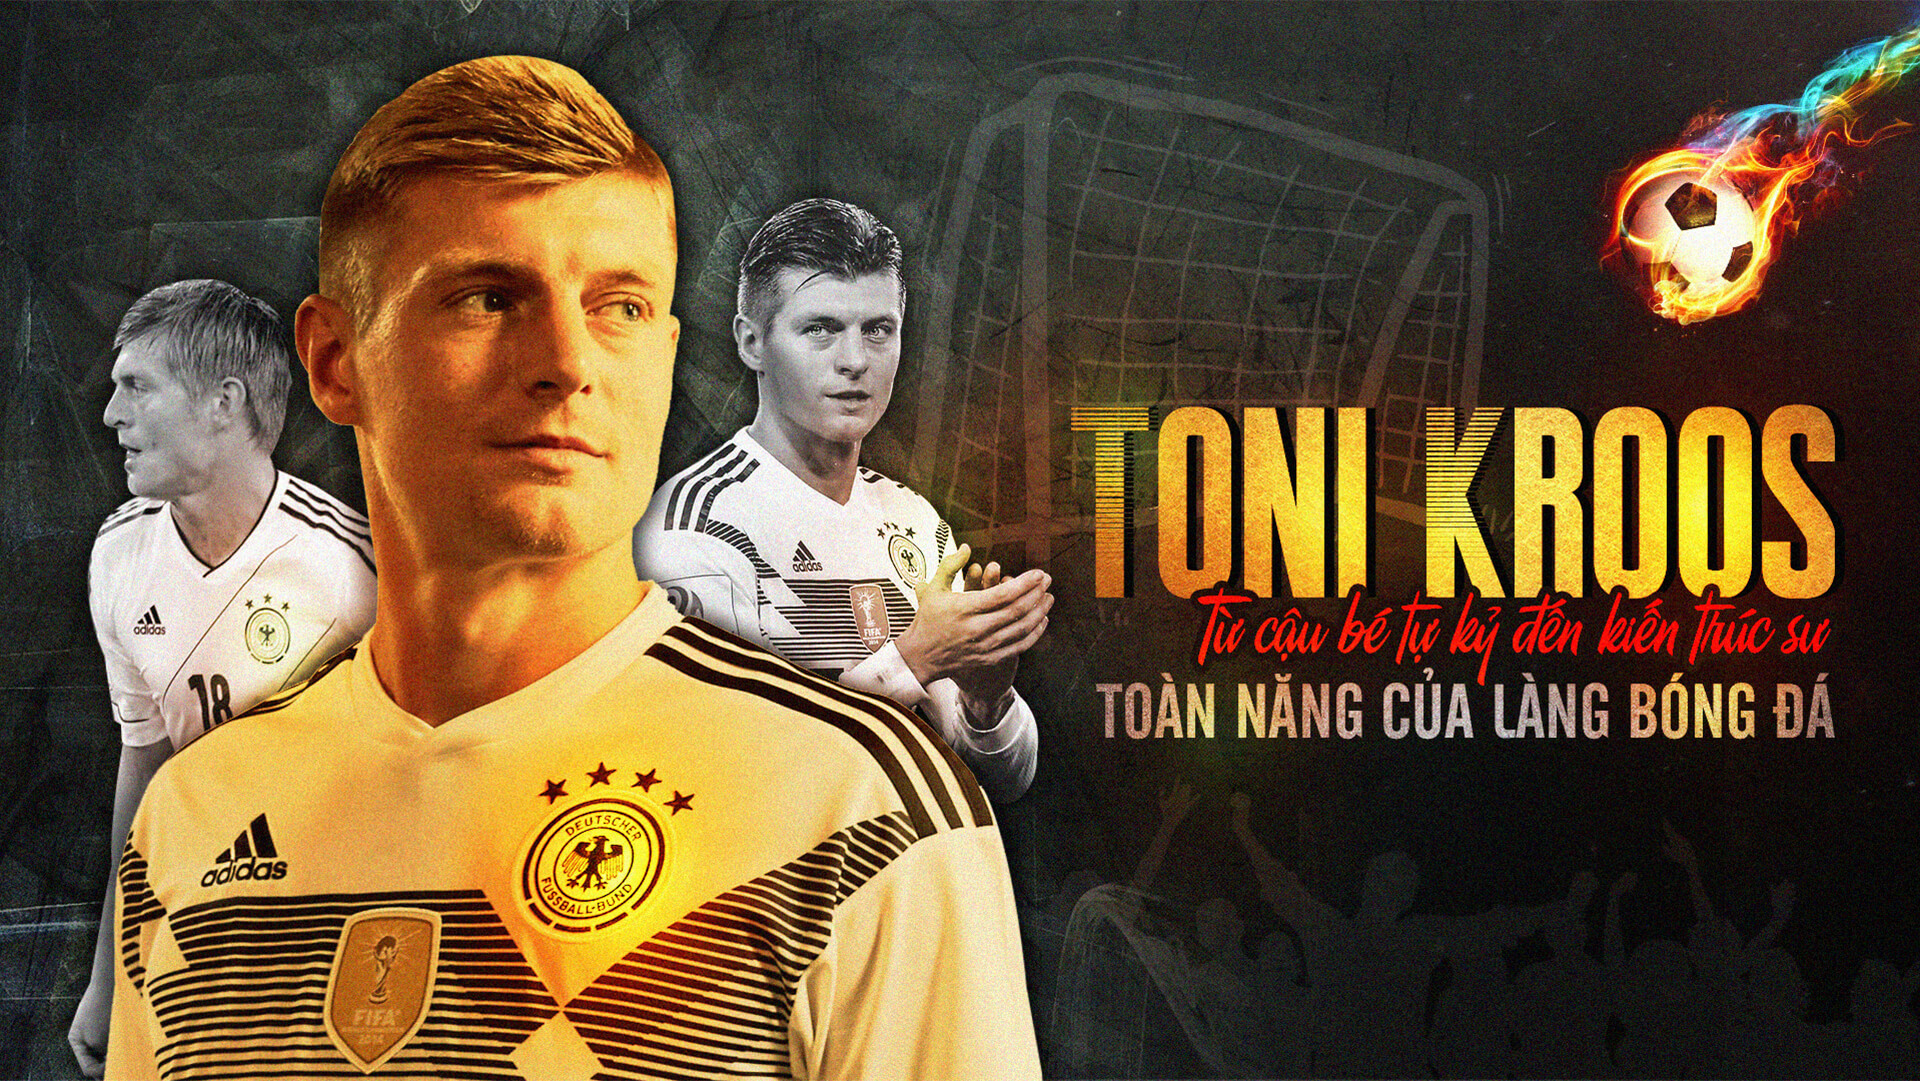 Toni Kroos - Từ cậu bé tự kỷ đến kiến trúc sư toàn năng của làng bóng đá | Bóng Đá